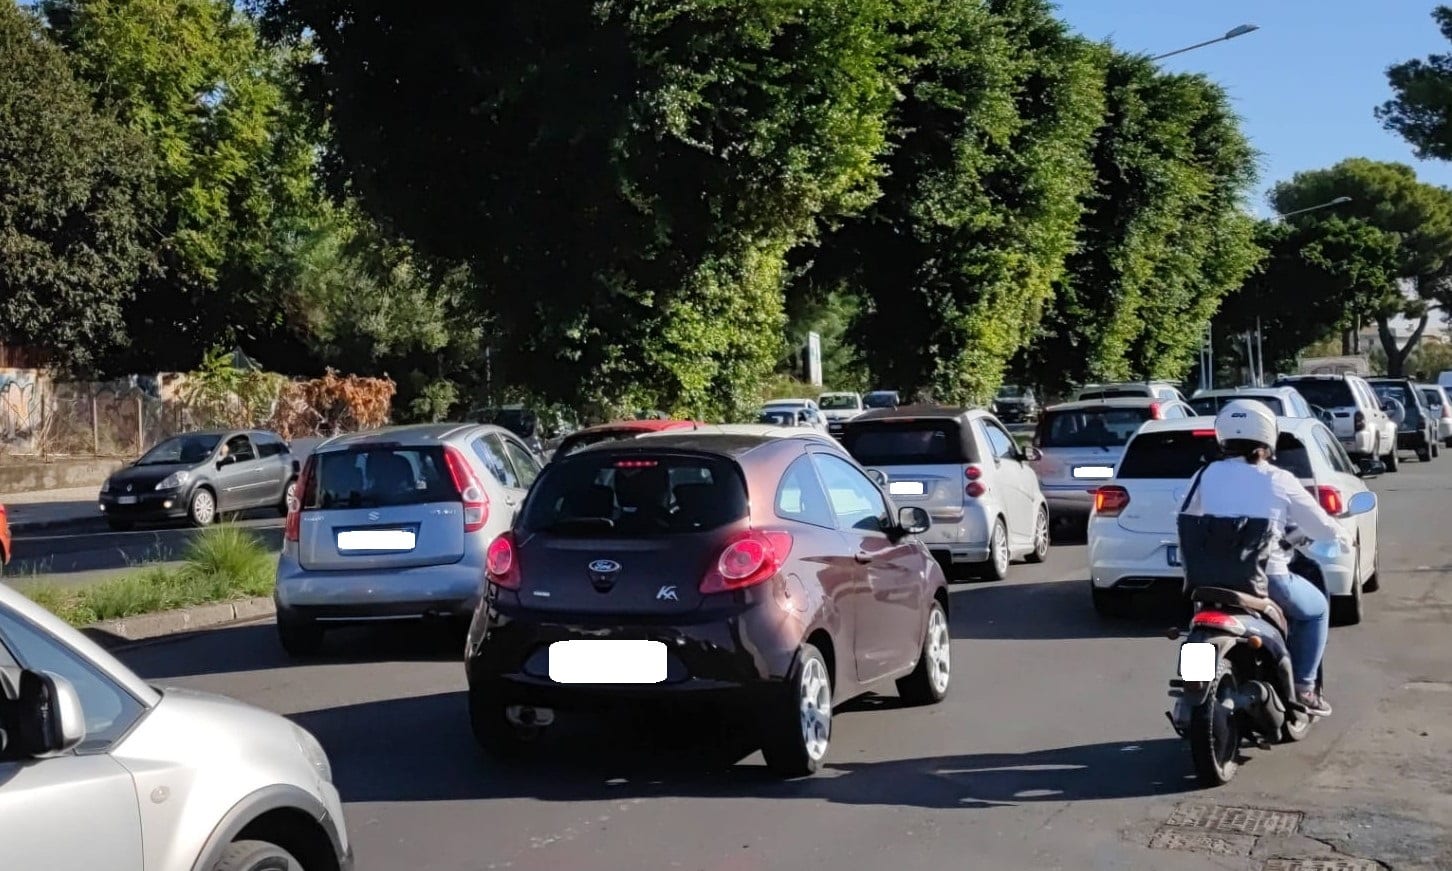 Traffico impazzito lungo la circonvallazione di Catania, chiesti provvedimenti. Buceti: “Serve piano viario adeguato”